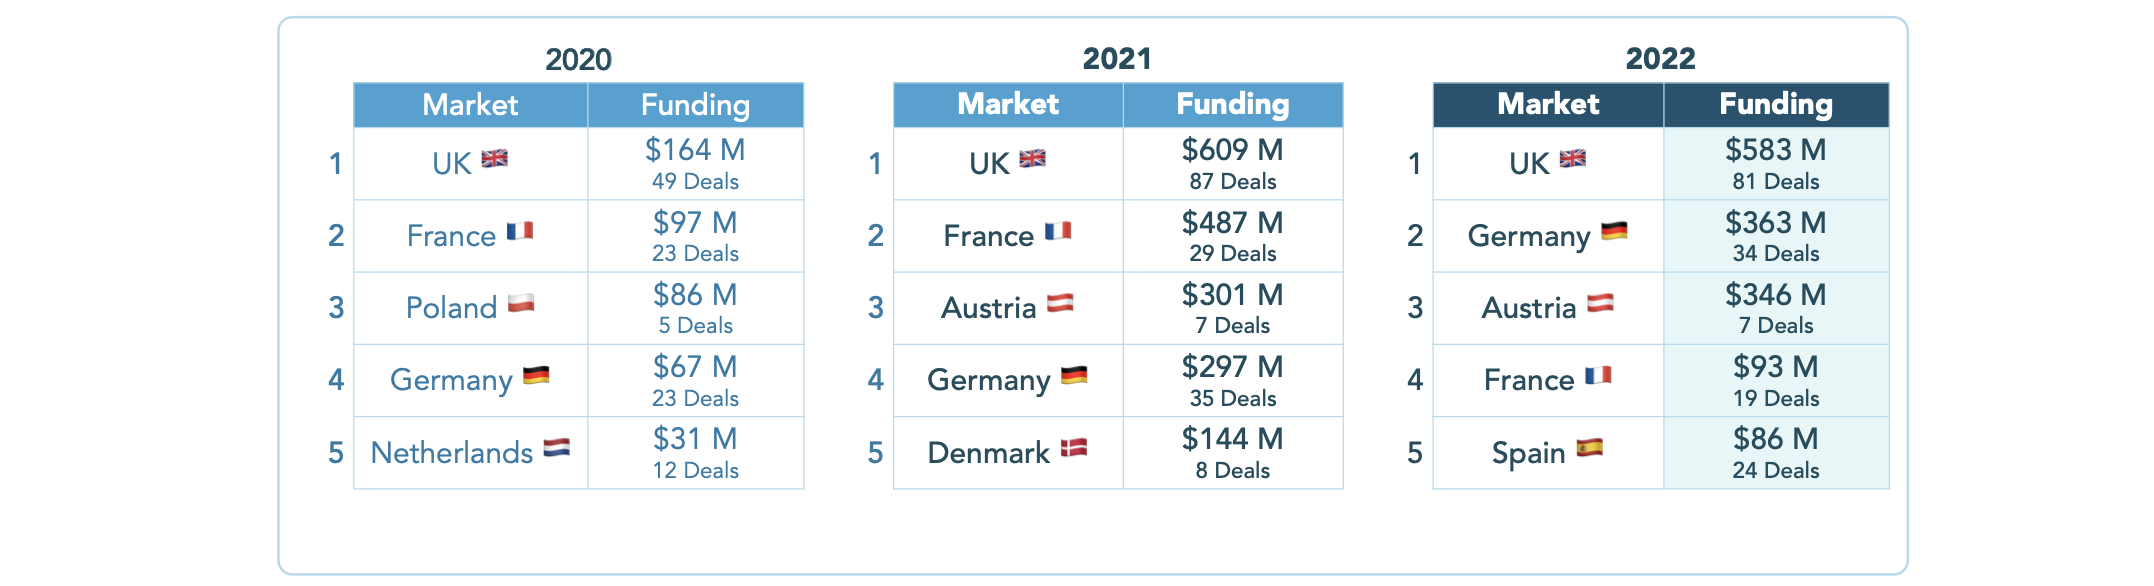 Financiamento Edtech na Europa por mercado.  Créditos da imagem: Brighteye Ventures